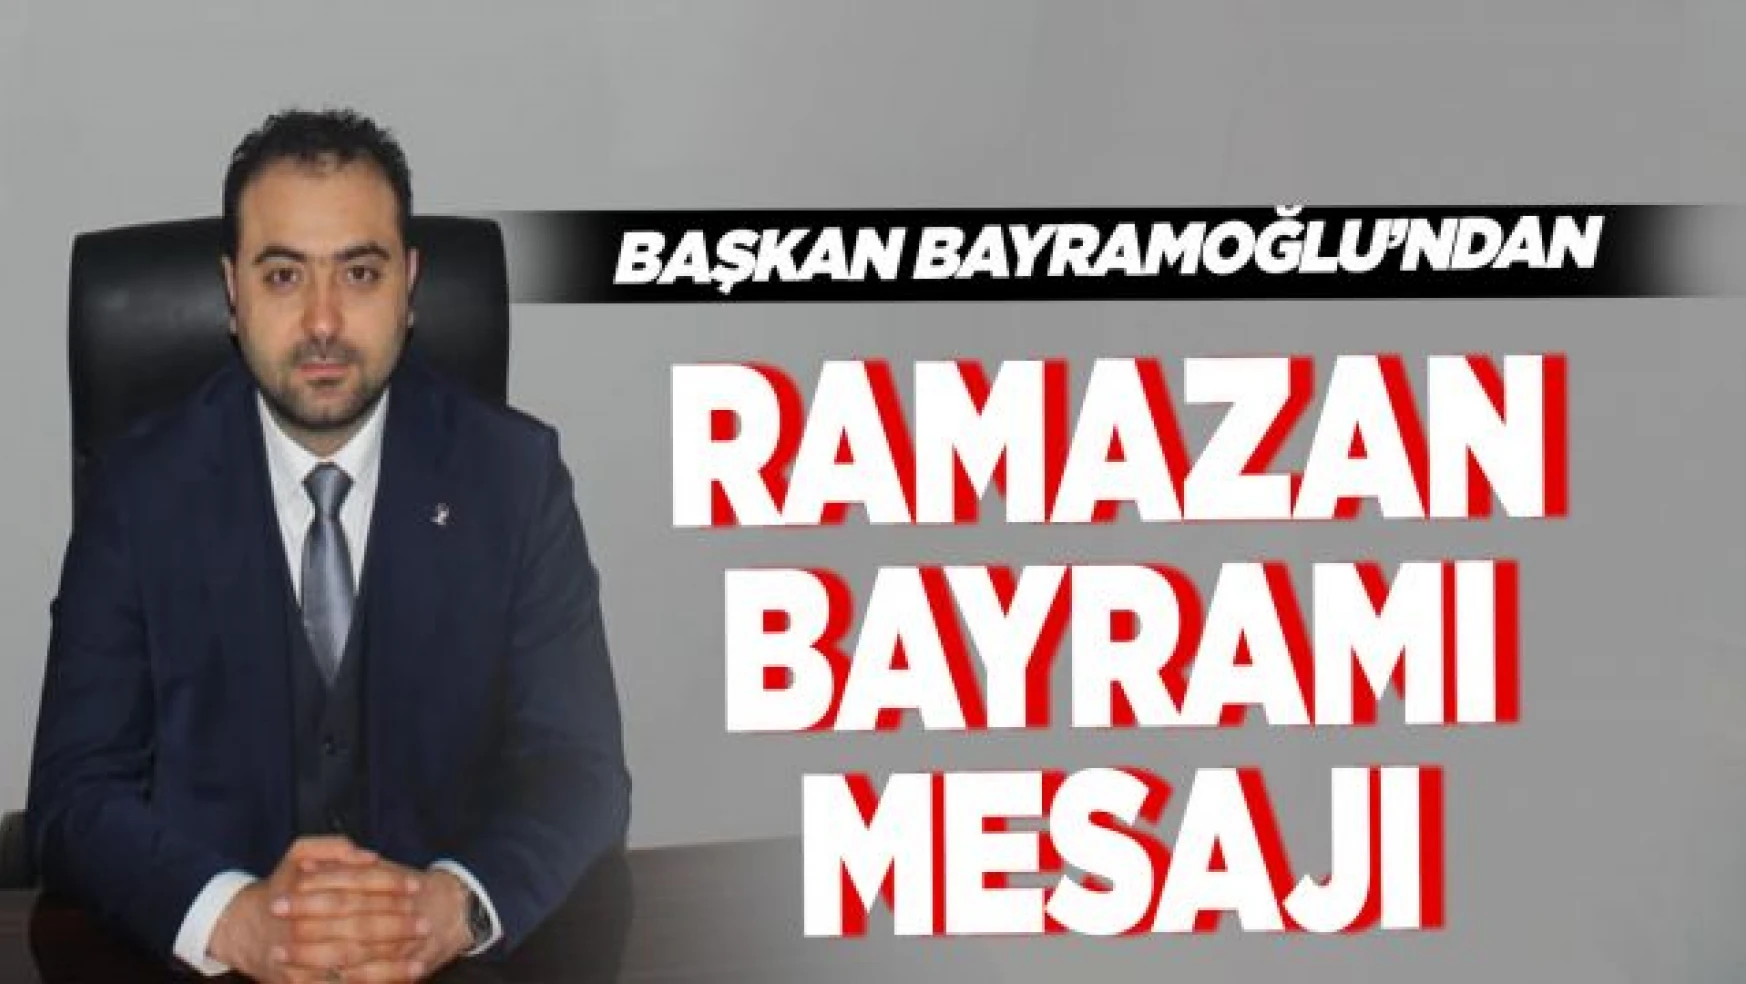 AK Parti Edremit İlçe Başkanı Sezer Bayramoğlu'ndan bayram mesajı